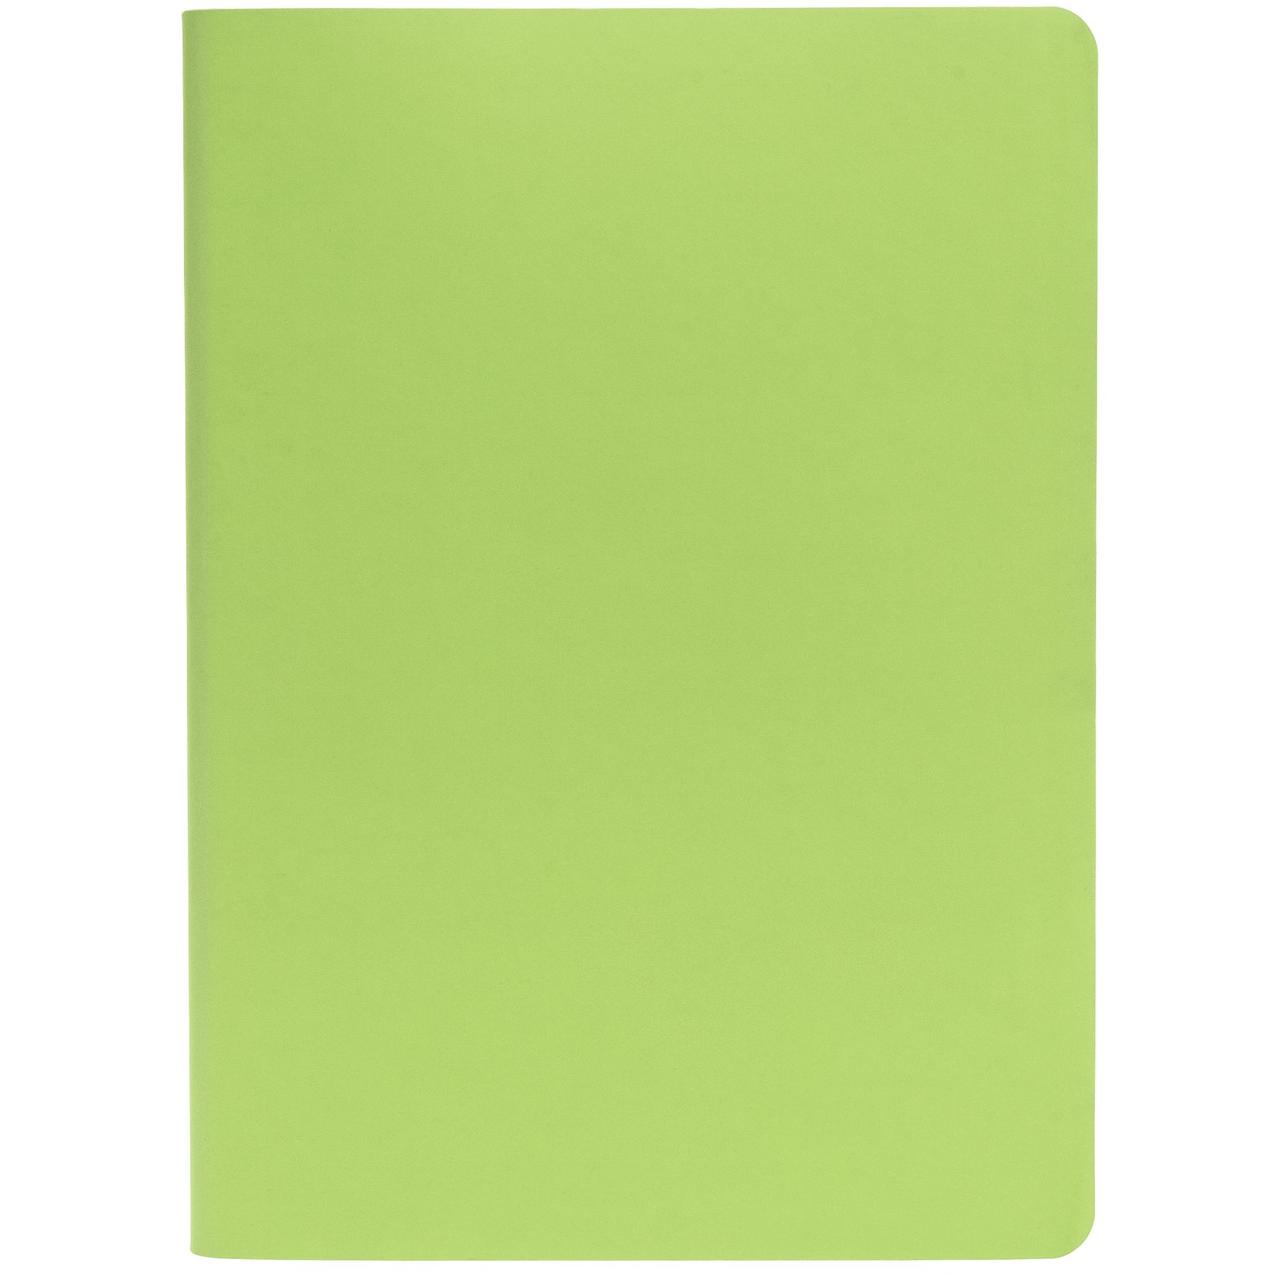 Ежедневник Flex Shall, датированный, светло-зеленый (артикул 17881.90), фото 1